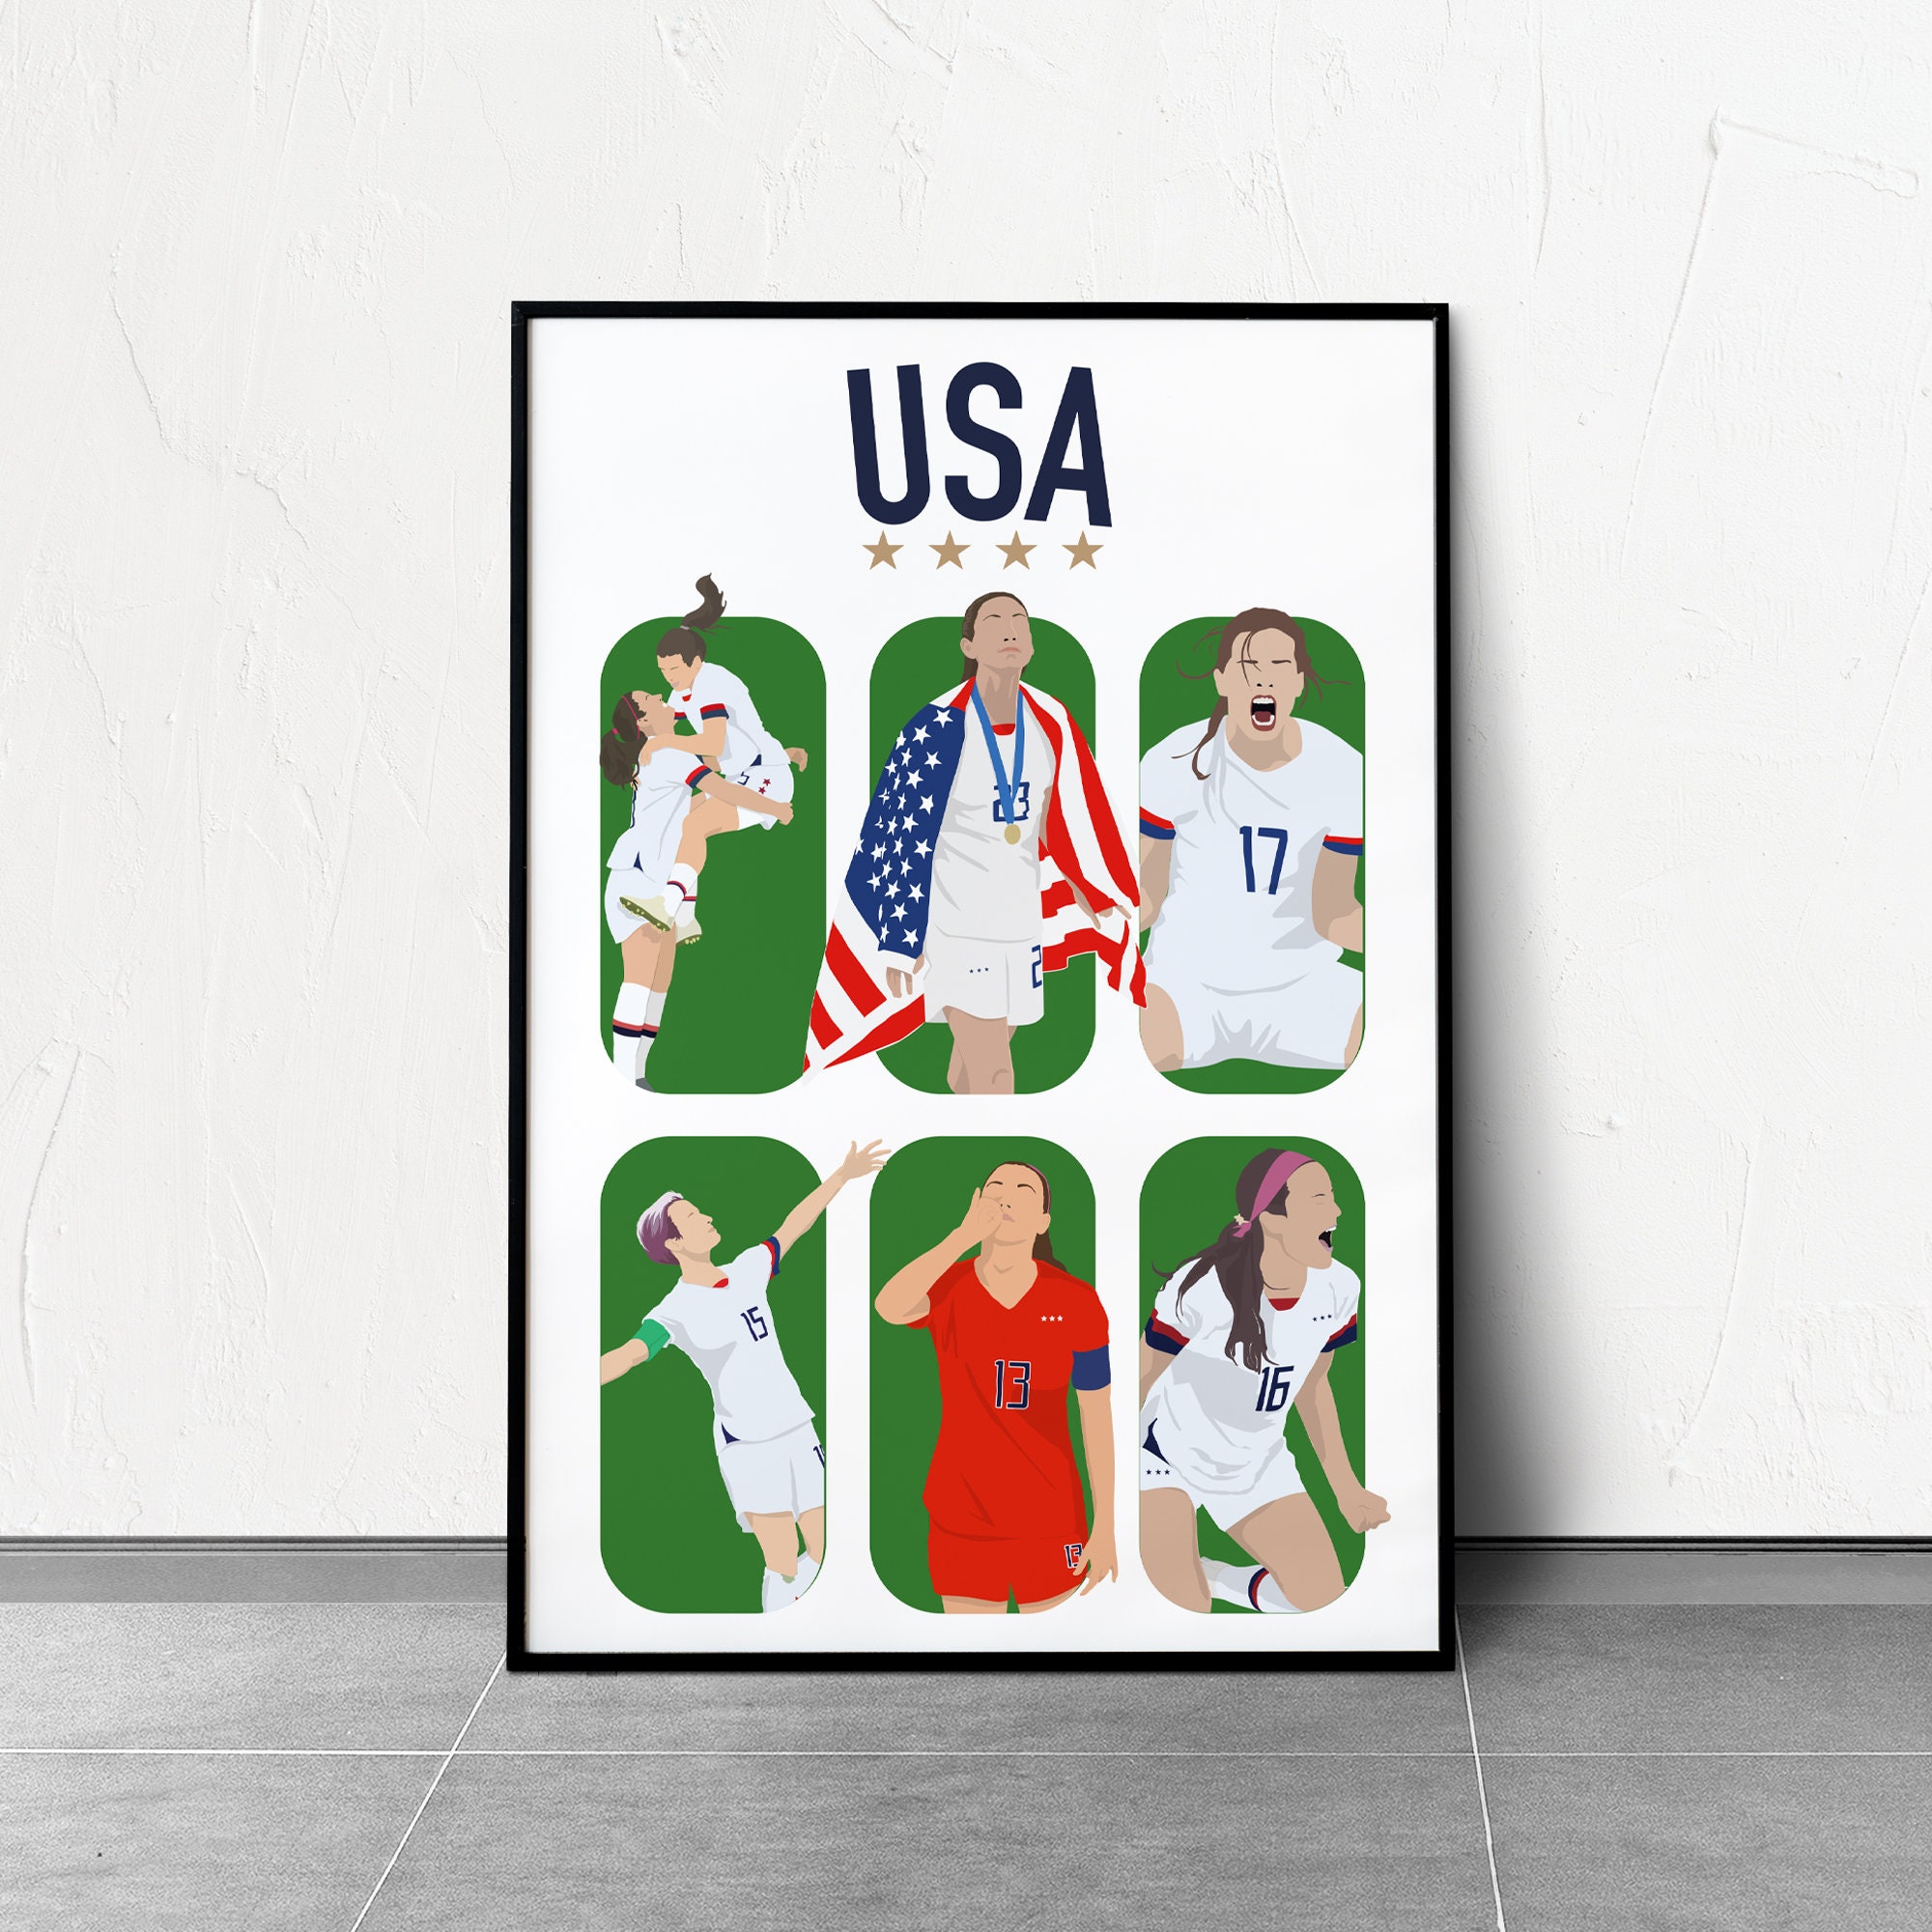 USWNT, U.S. Women's National Soccer Team